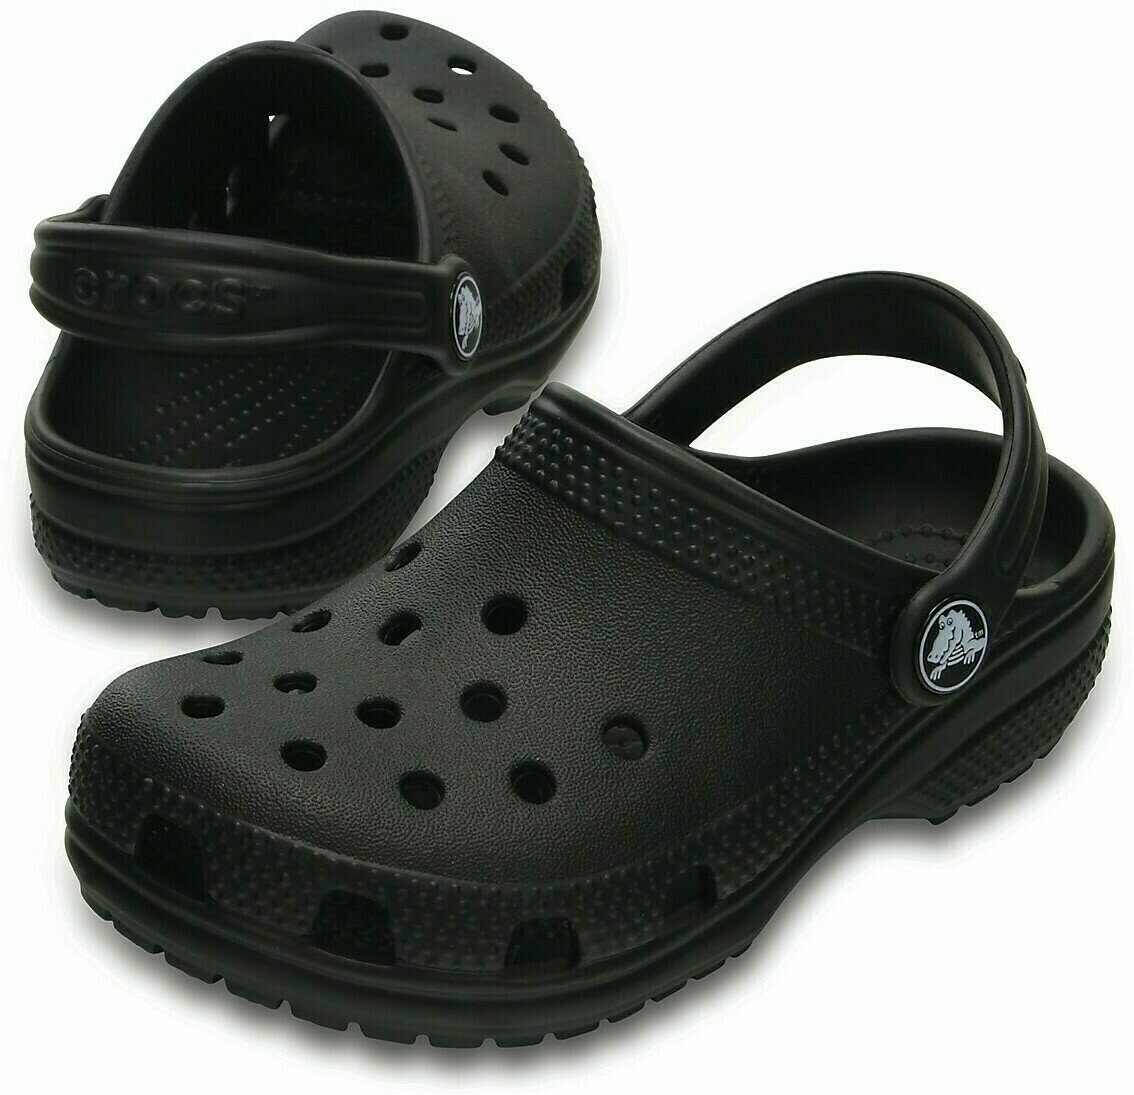 Buty żeglarskie dla dzieci Crocs Kids' Classic Clog Black 38-39